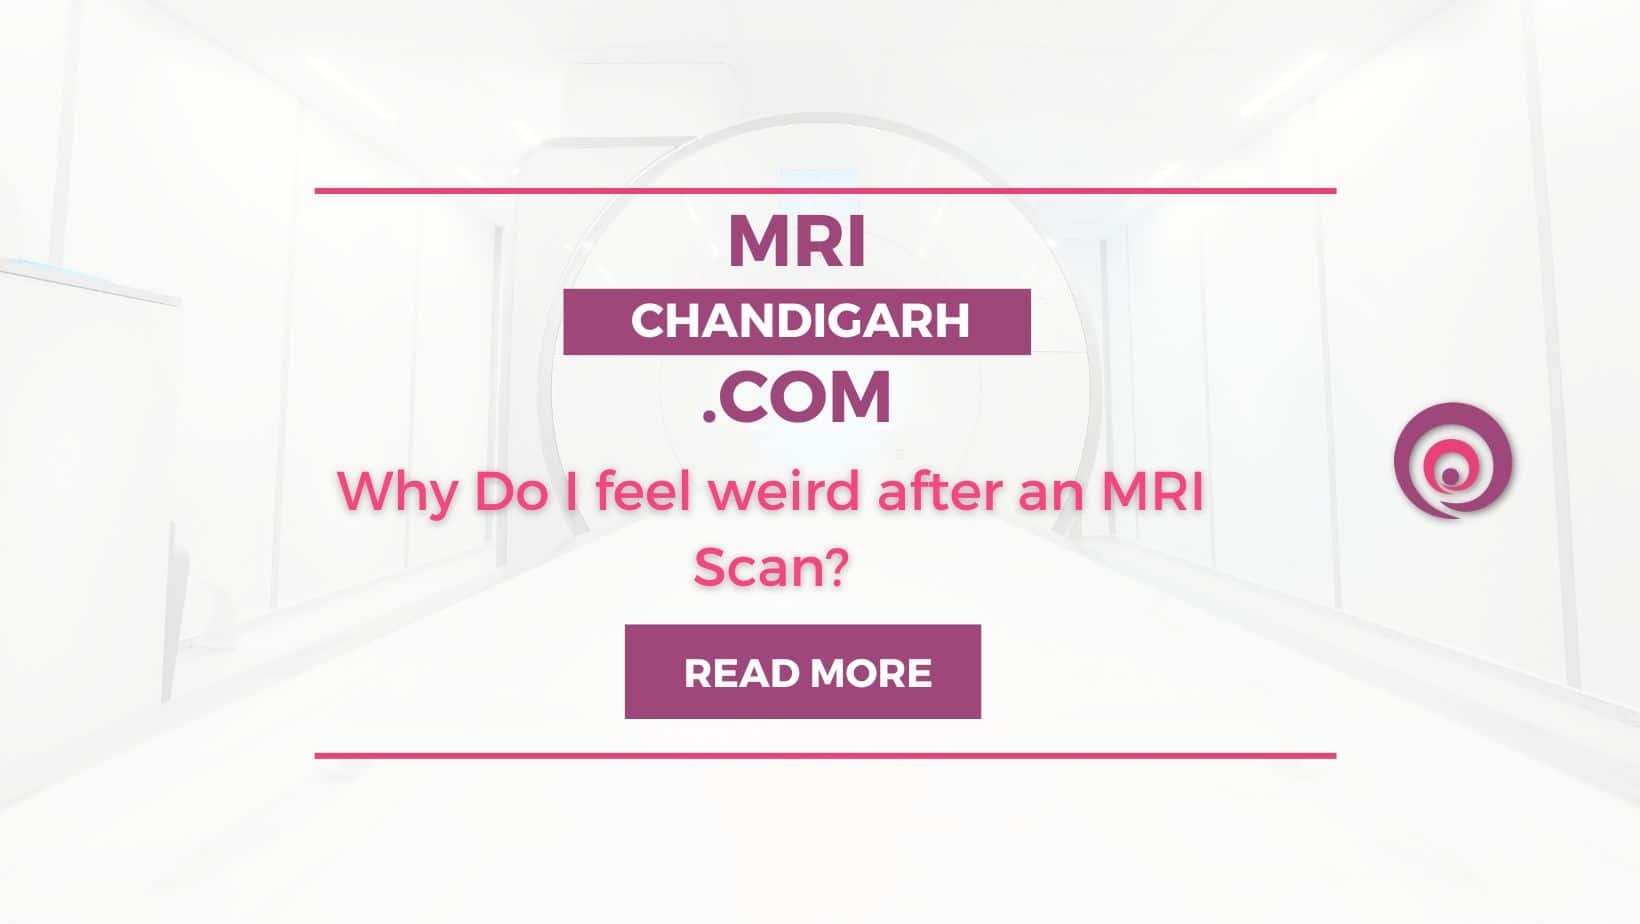 Why Do I feel weird after an MRI Scan?